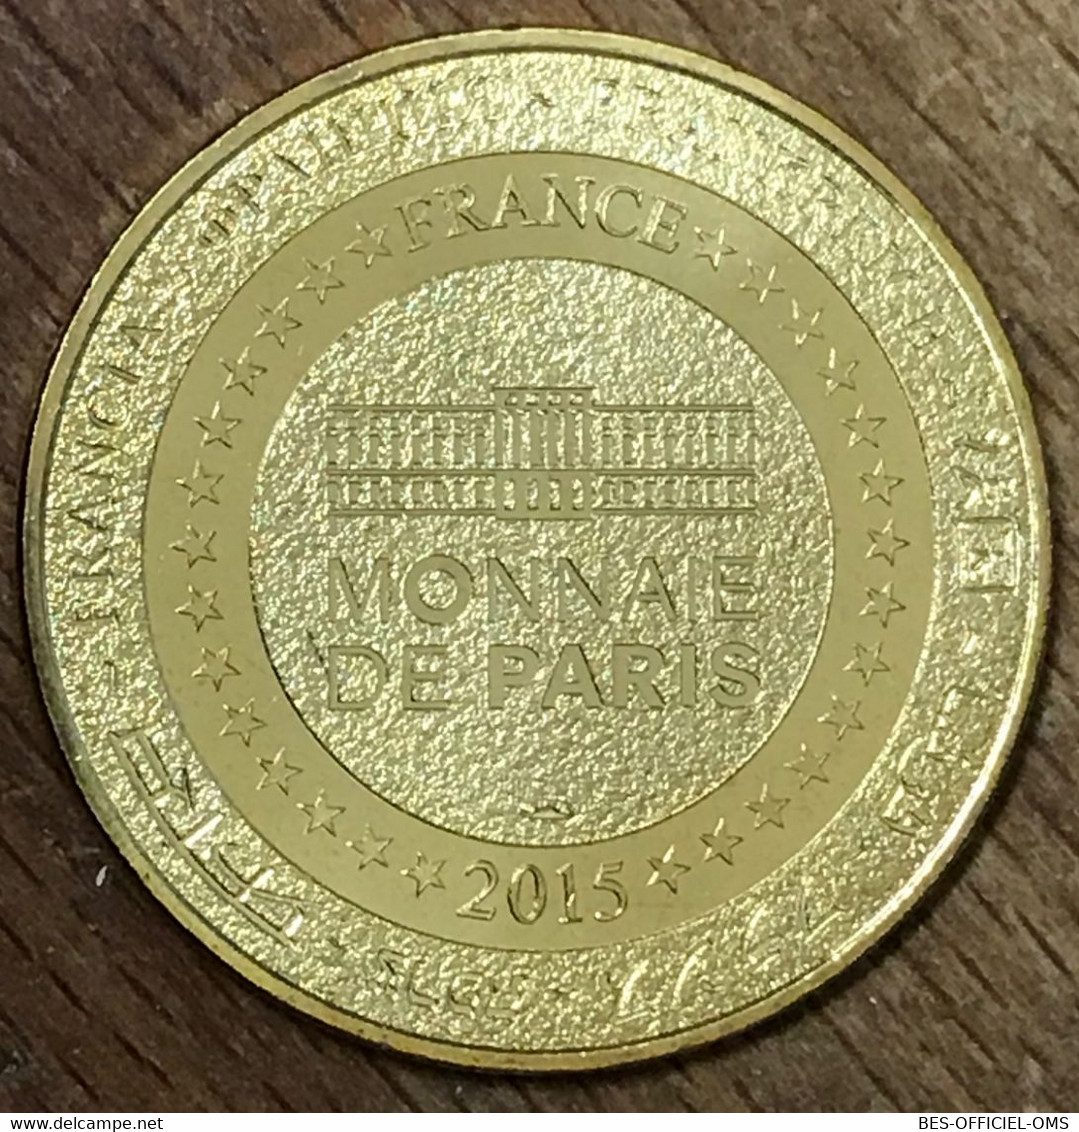 78 CHÂTEAU DE THOIRY 50 ANS MDP 2015 MÉDAILLE MONNAIE DE PARIS JETON TOURISTIQUE MEDALS COINS TOKENS - 2015